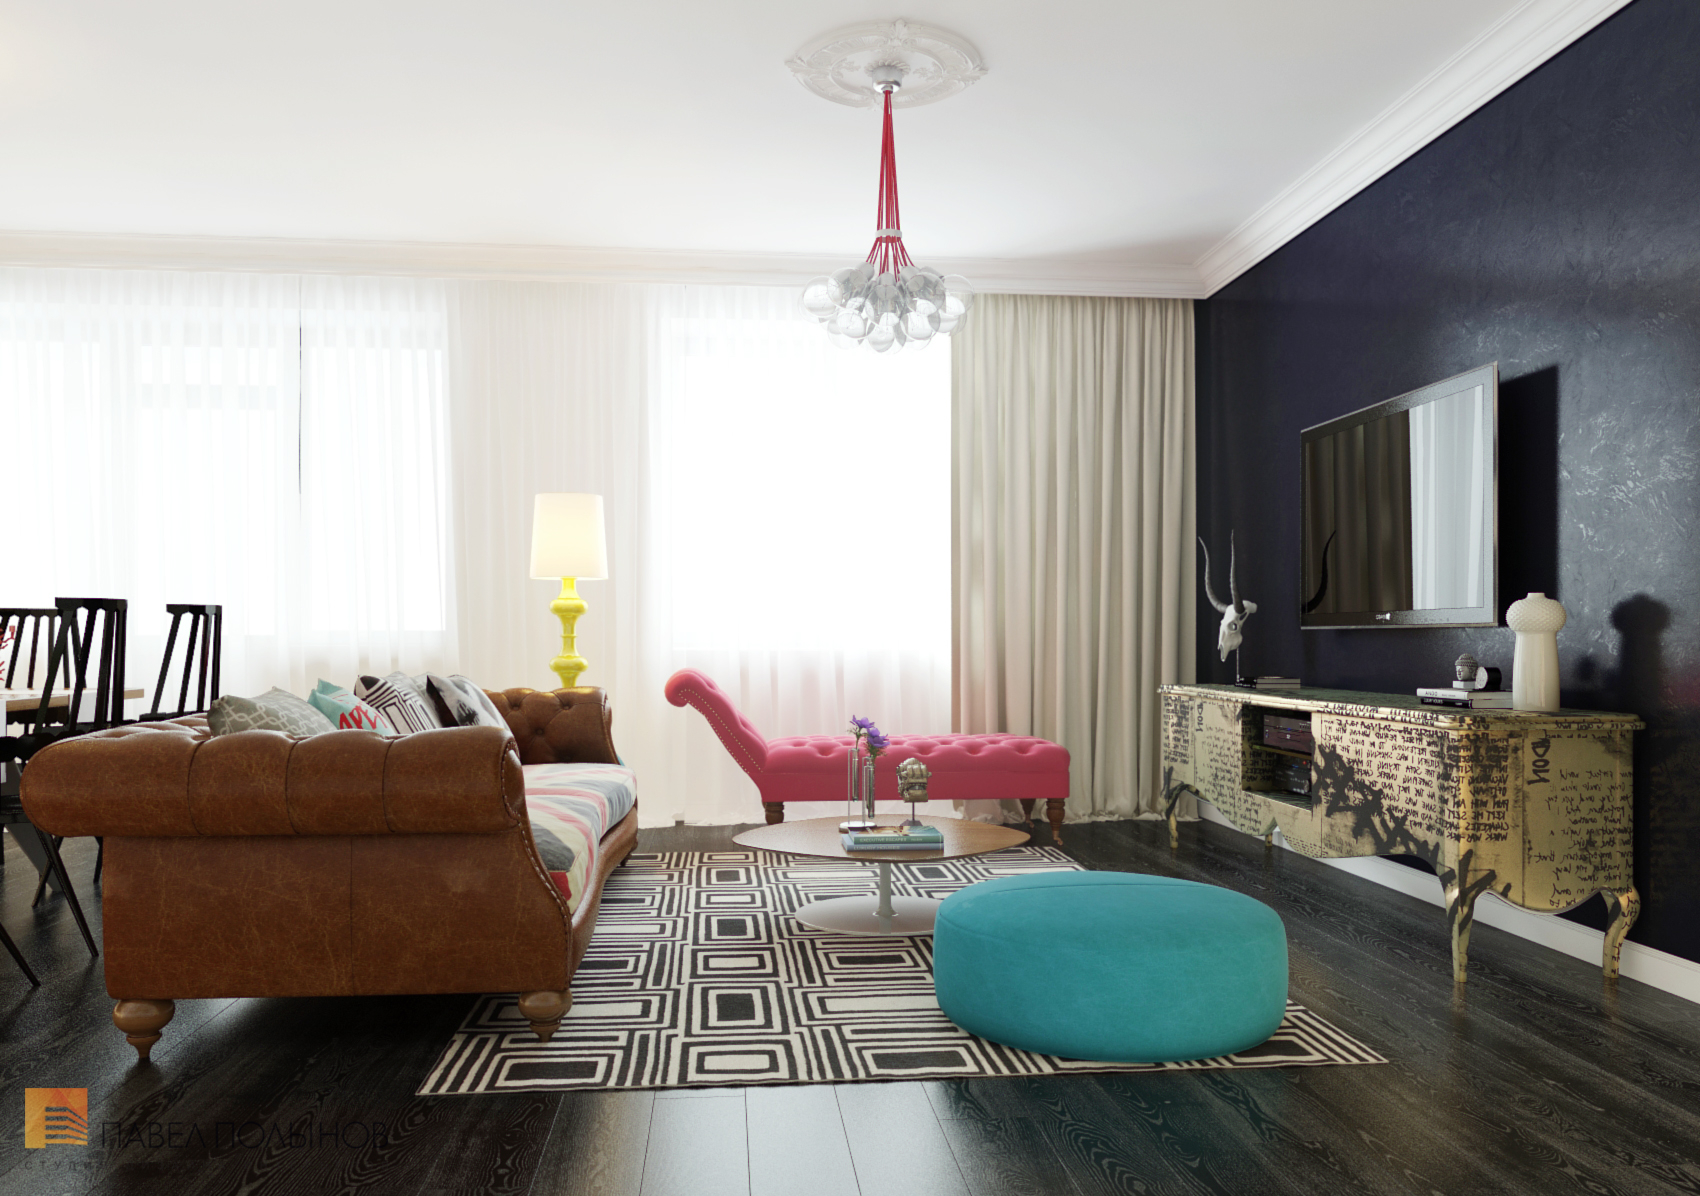 Фото дизайн гостиной из проекта «Дизайн интерьера квартиры в ЖК «Ижора Парк»»